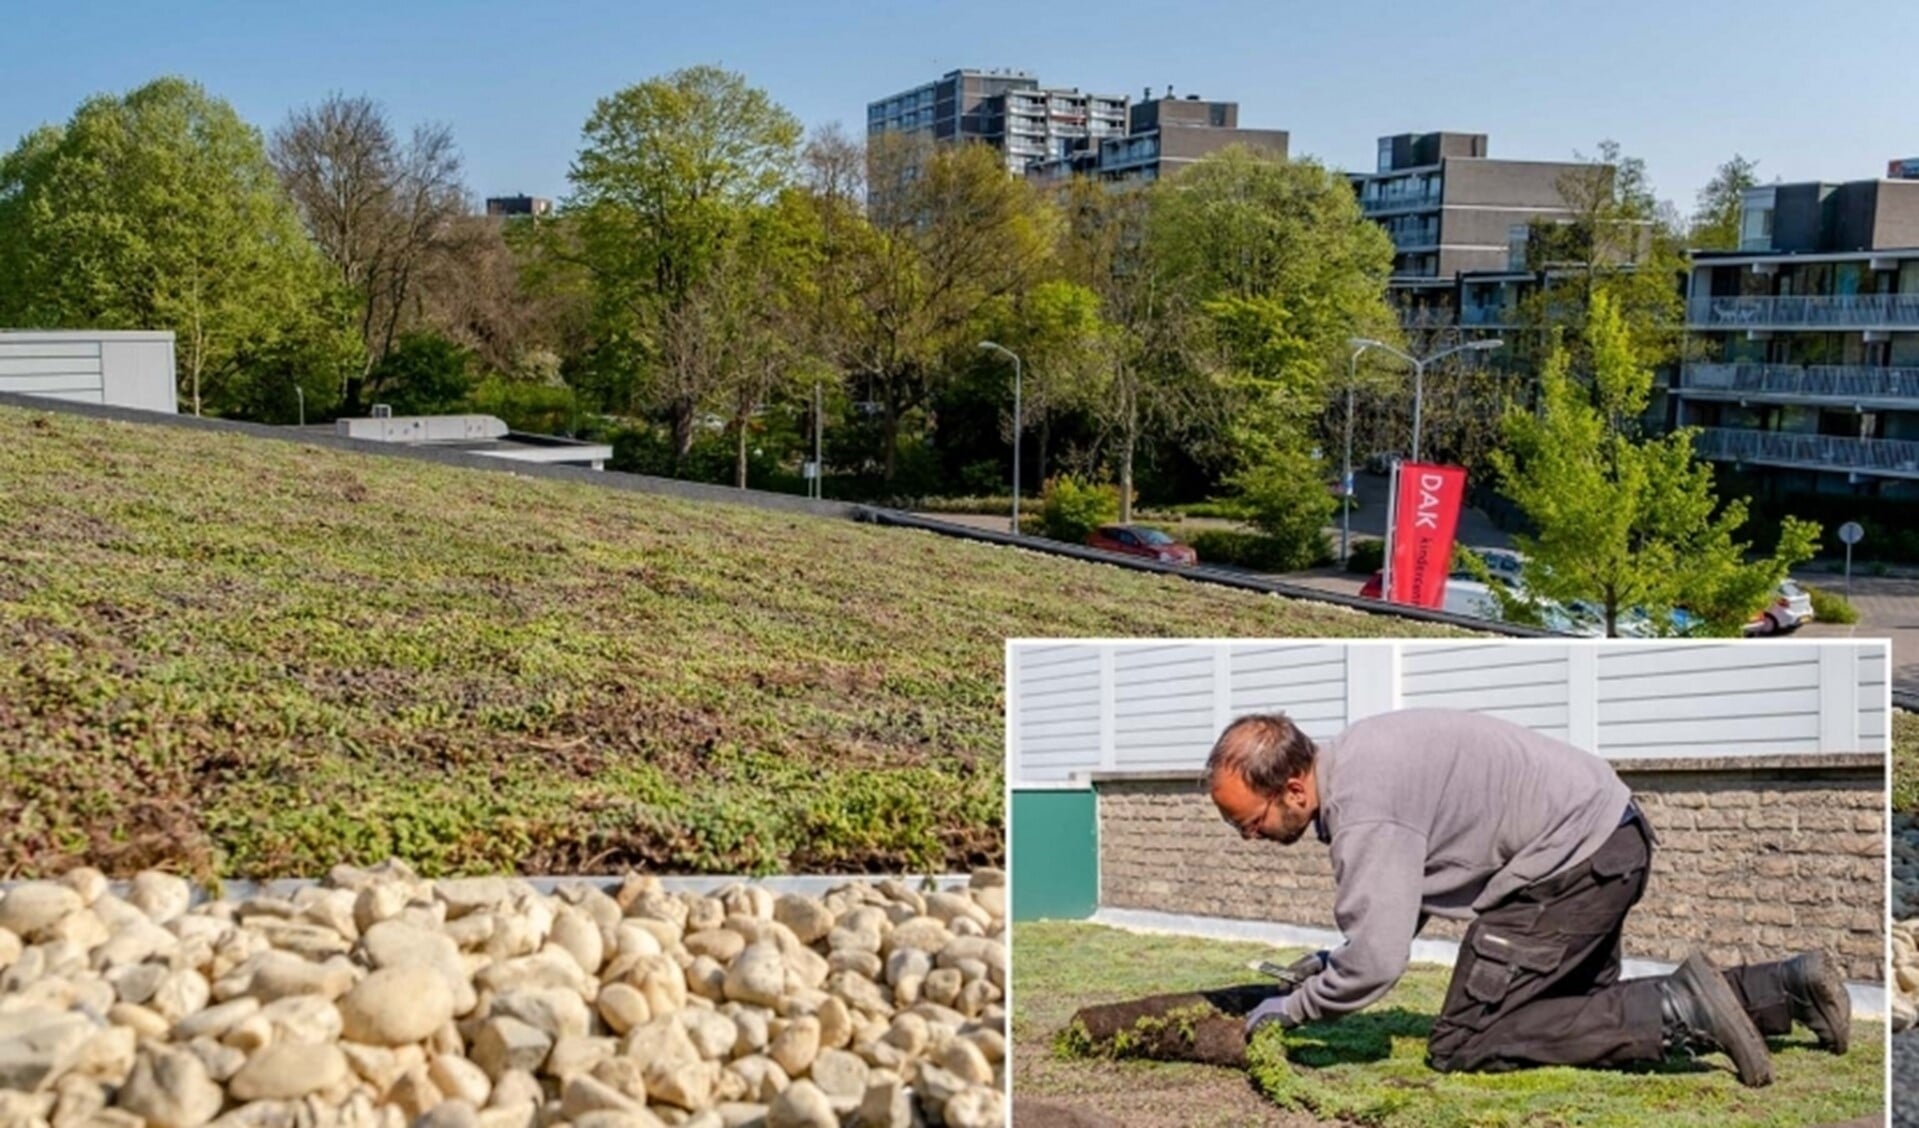 De aanleg van een groen dak op kindercentrum EVA DAK in Essesteijn (foto en inzetje: gemeente LV).